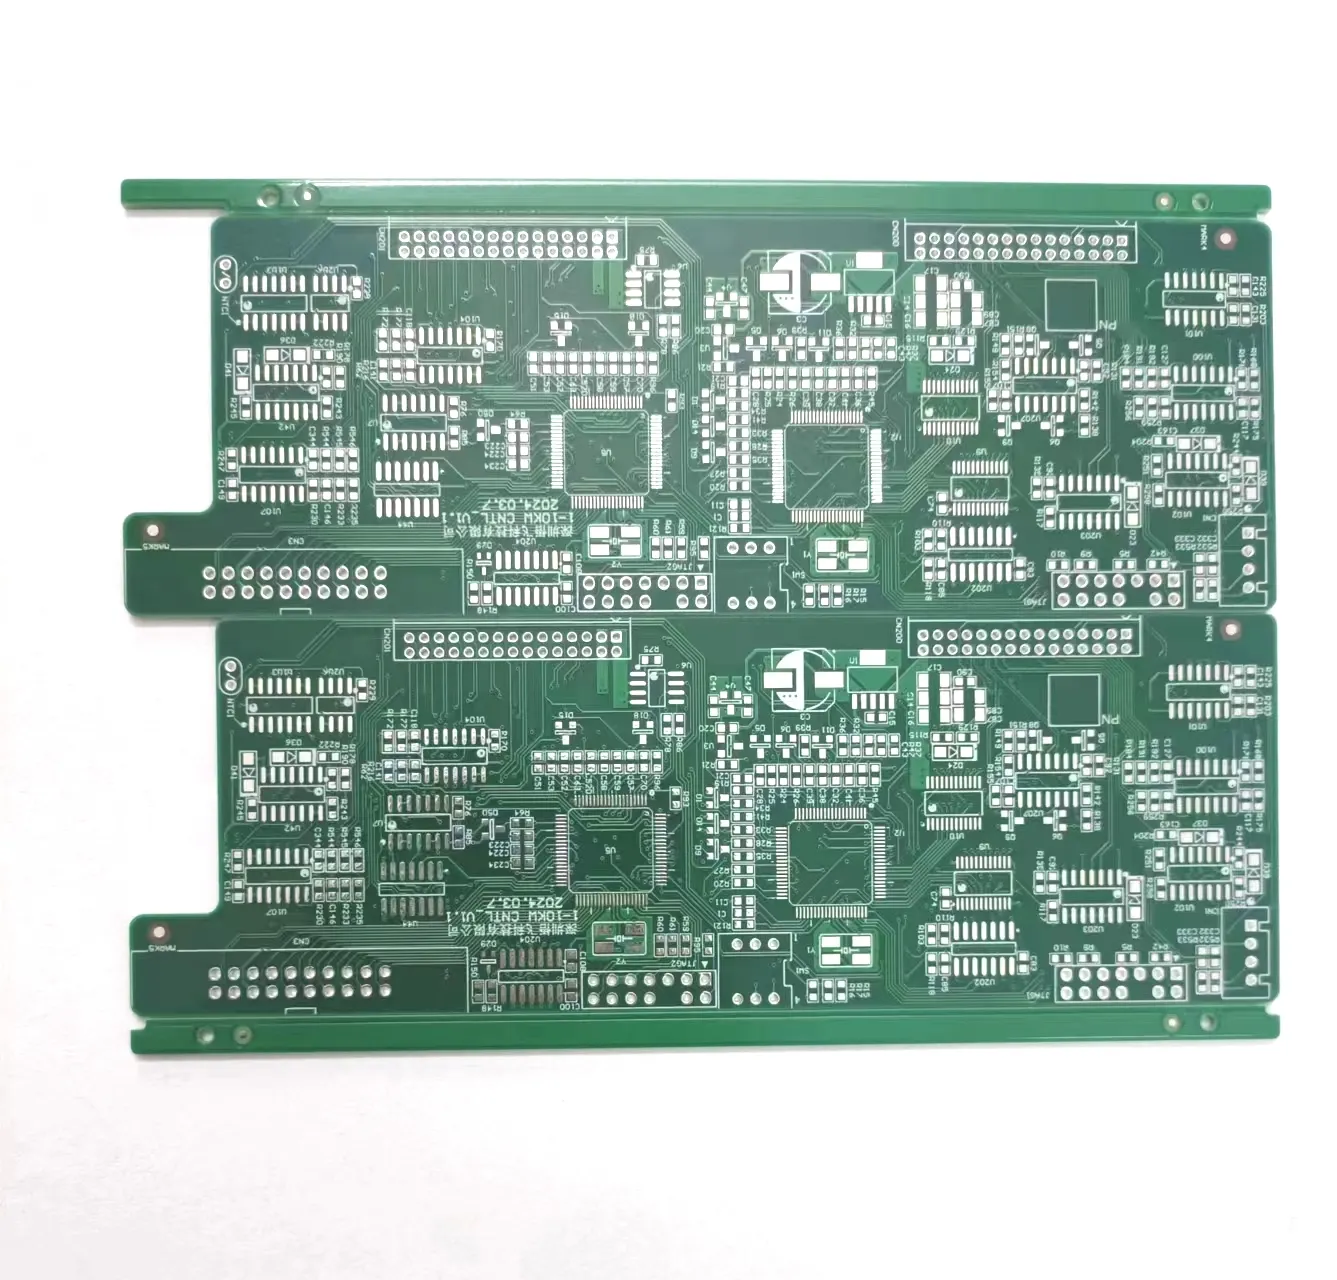 コントローラプロトタイプ回路基板PCBAカスタムサービス開発PCBアセンブリ工場